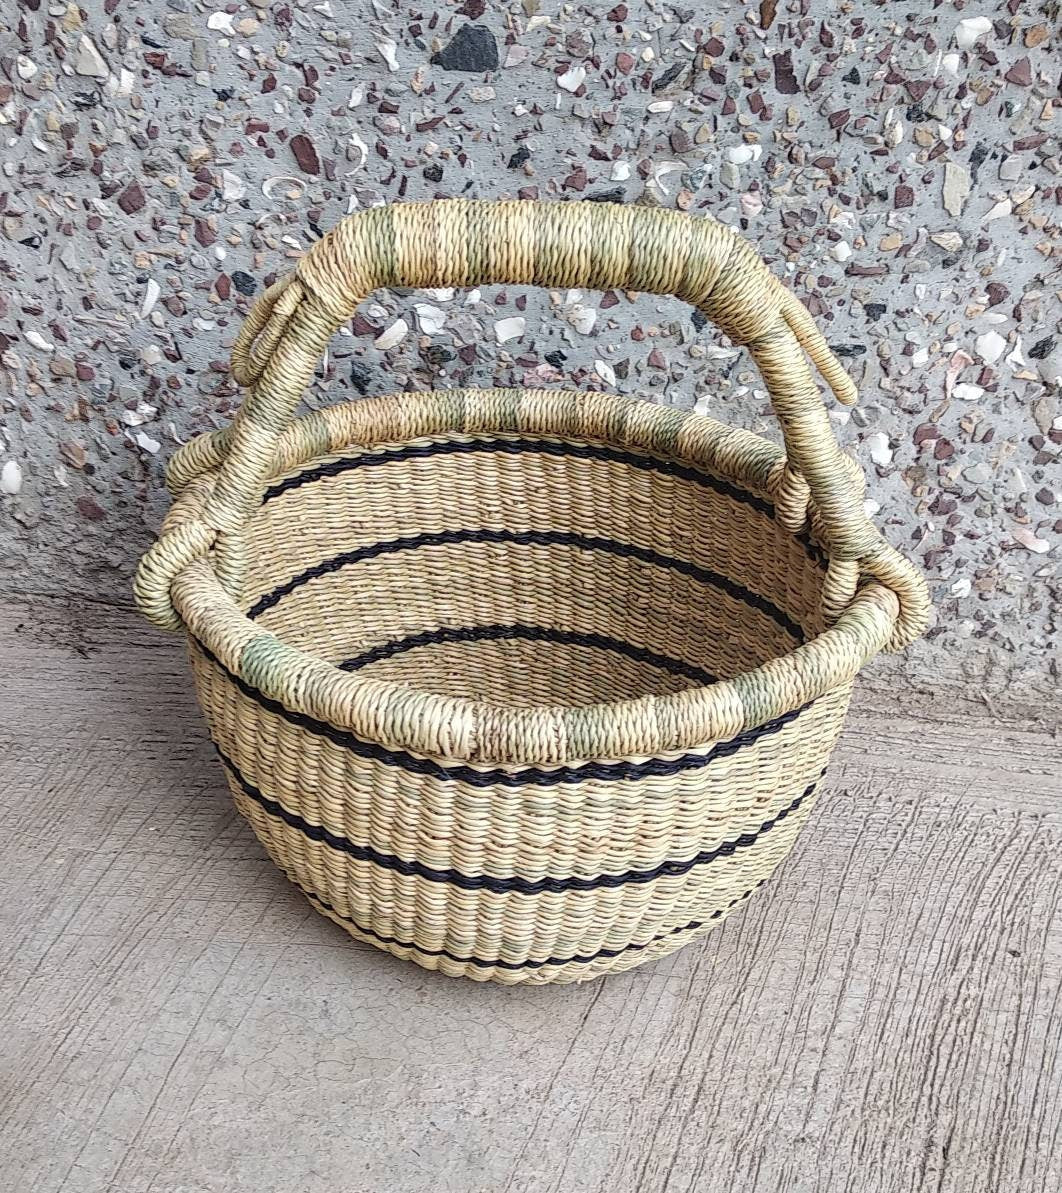 Small Basket | Bolga market basket | picnic basket |Market basket | Gift Basket | Woven Basket | African Basket| Fair trade Basket - AfricanheritageGH